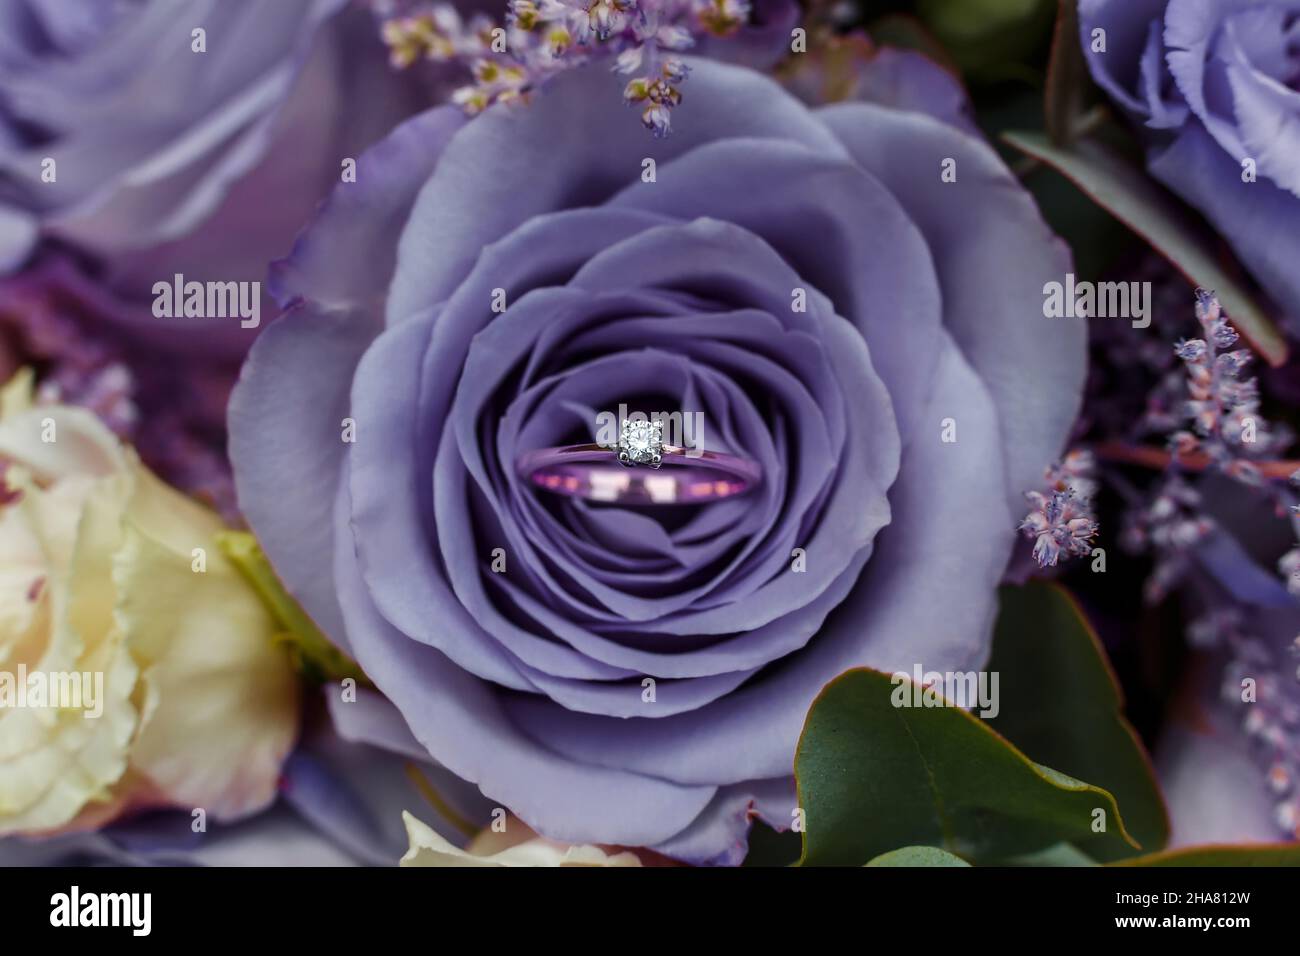 Goldring mit Edelstein unter den Blütenblättern der sehr perifarbenen Rose. Trendige Farbe des Jahres 2022 in der Hochzeit. Projekt- oder Angebotskonzept. Stockfoto